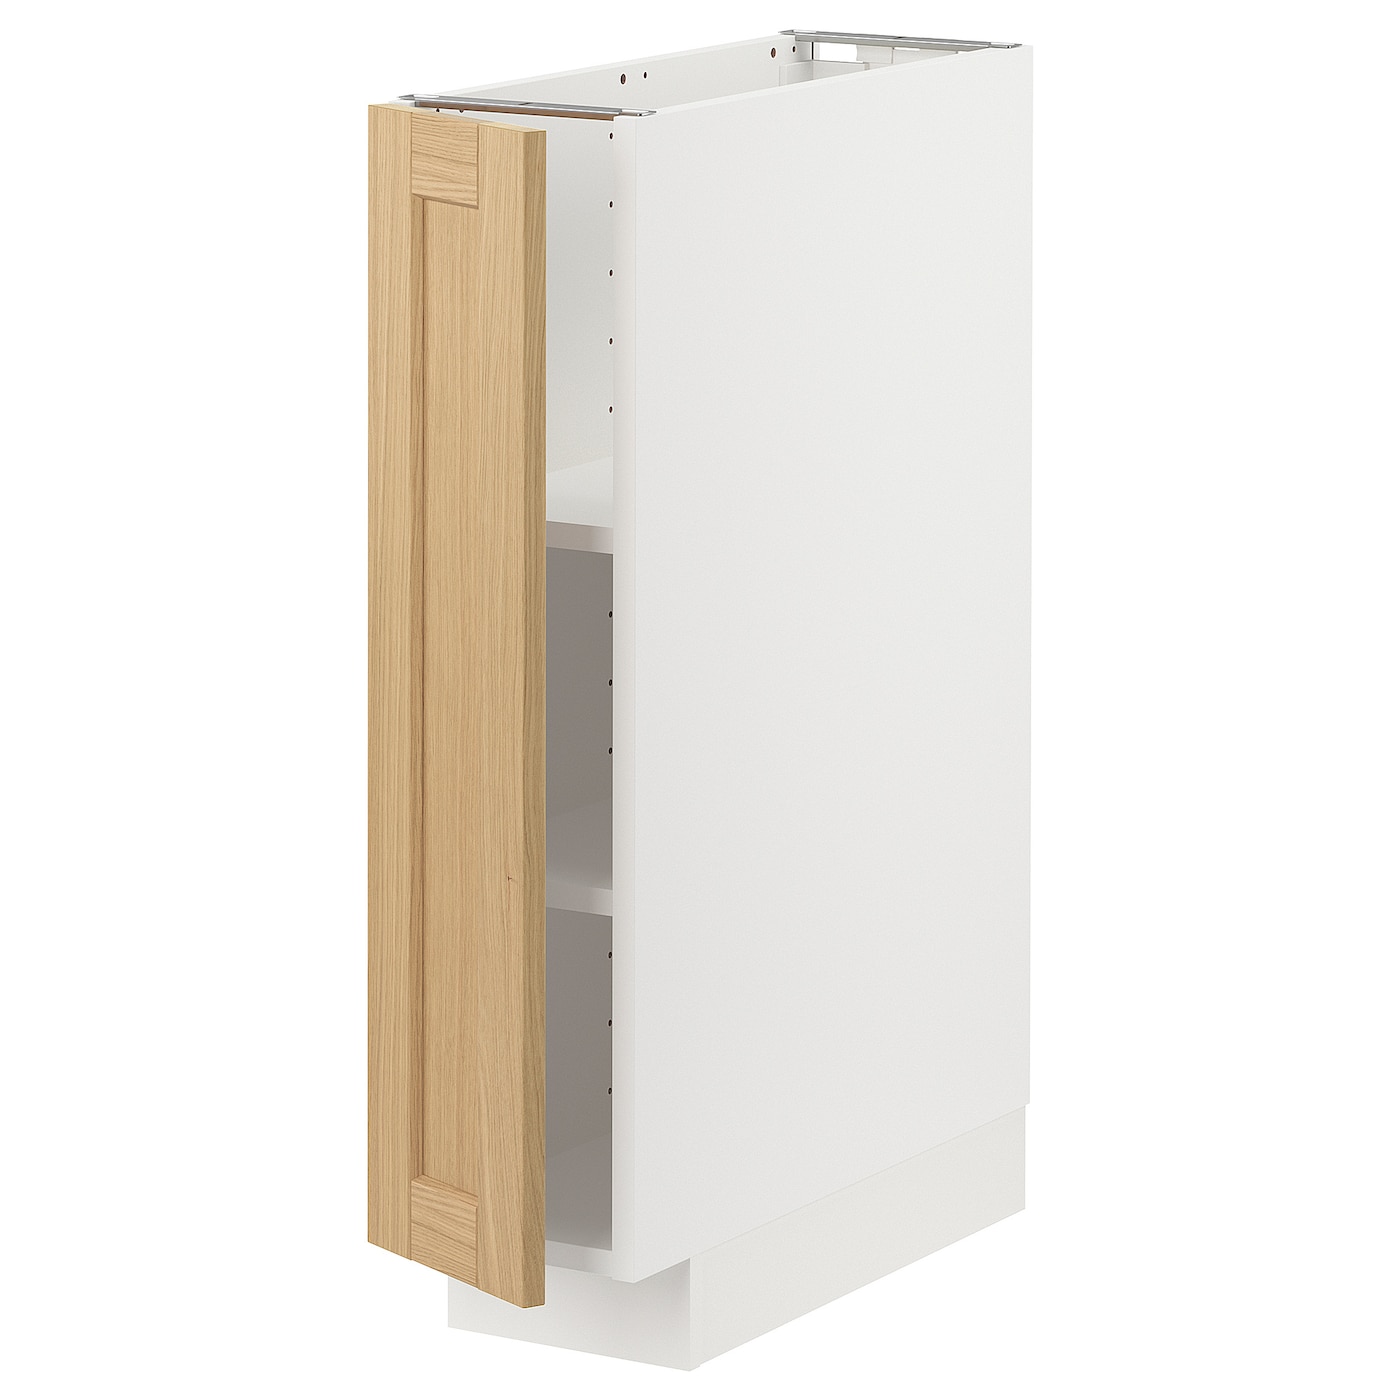 Напольный шкаф - METOD IKEA/ МЕТОД ИКЕА,  20х60 см, белый/под беленый дуб